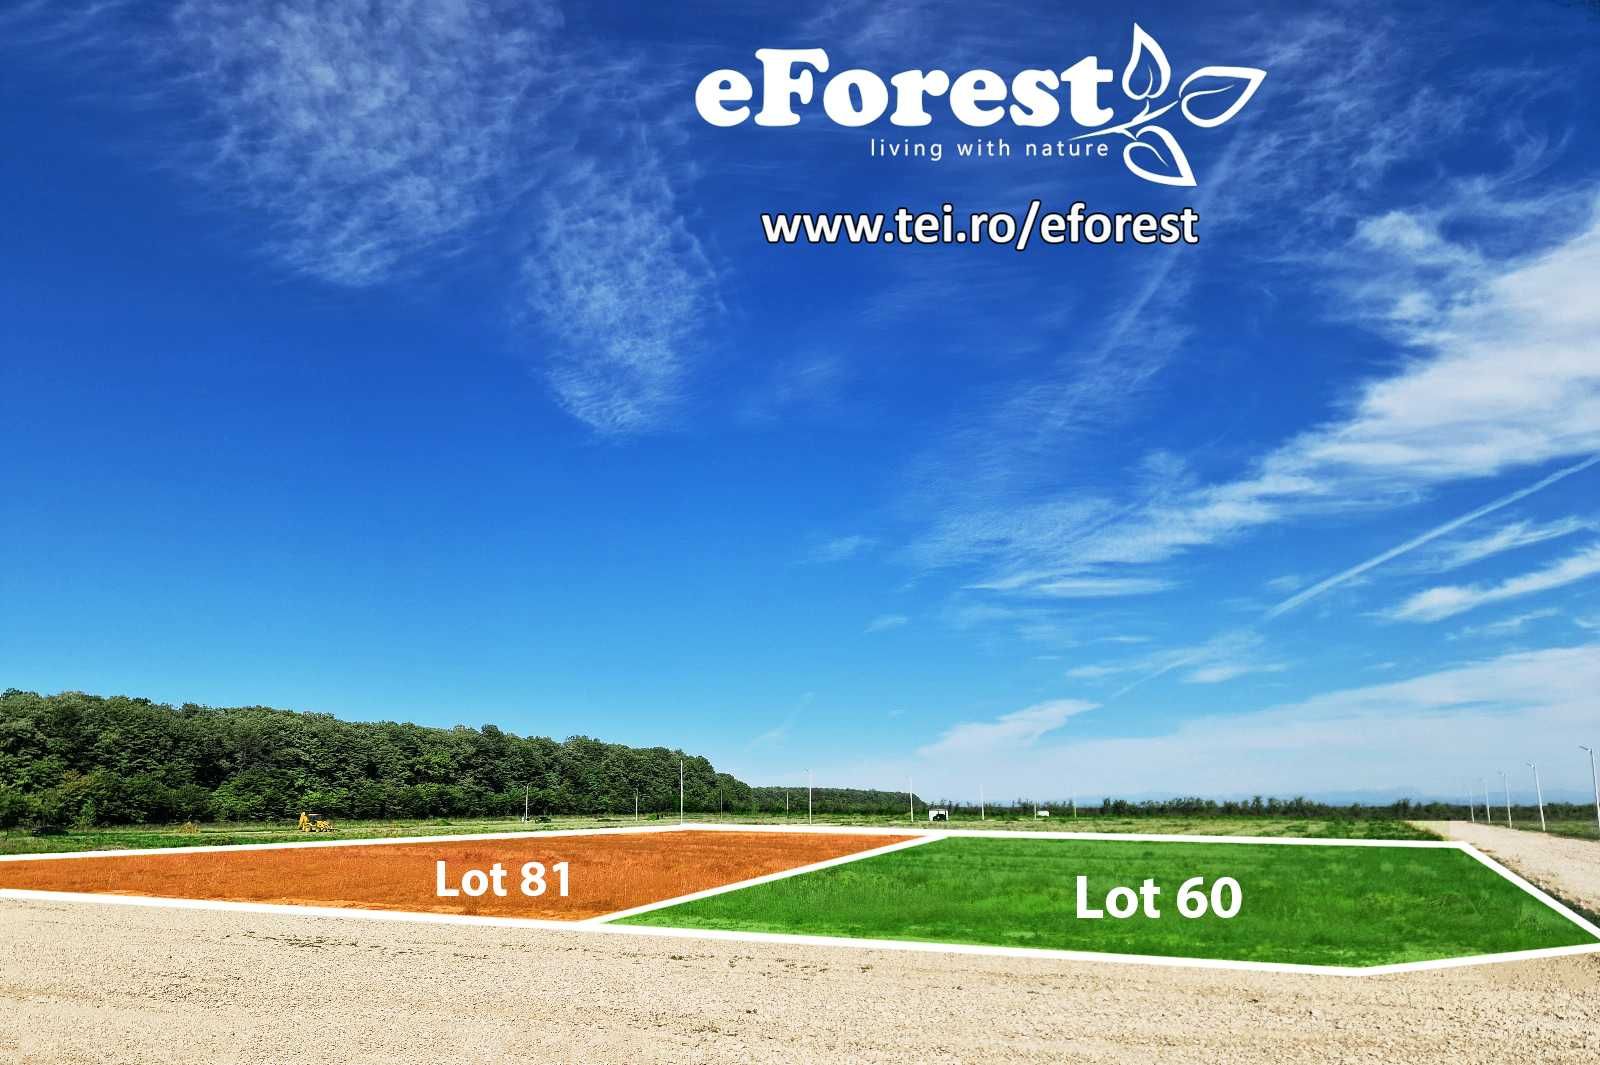 eForest 2, loturi de teren langa padure